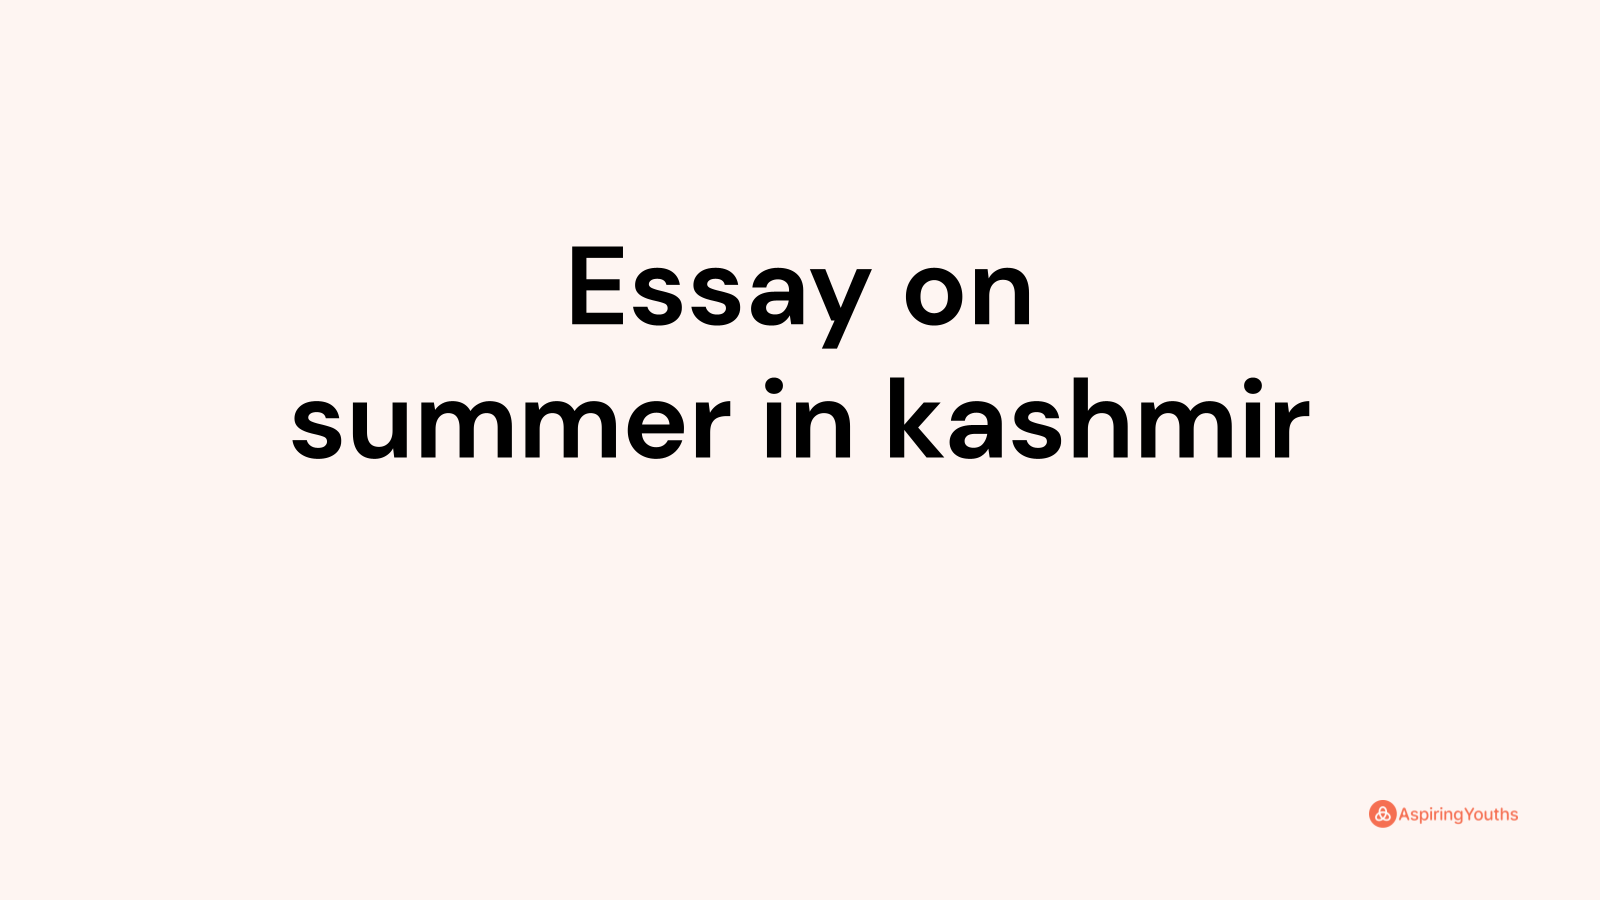 summer vacation in kashmir essay